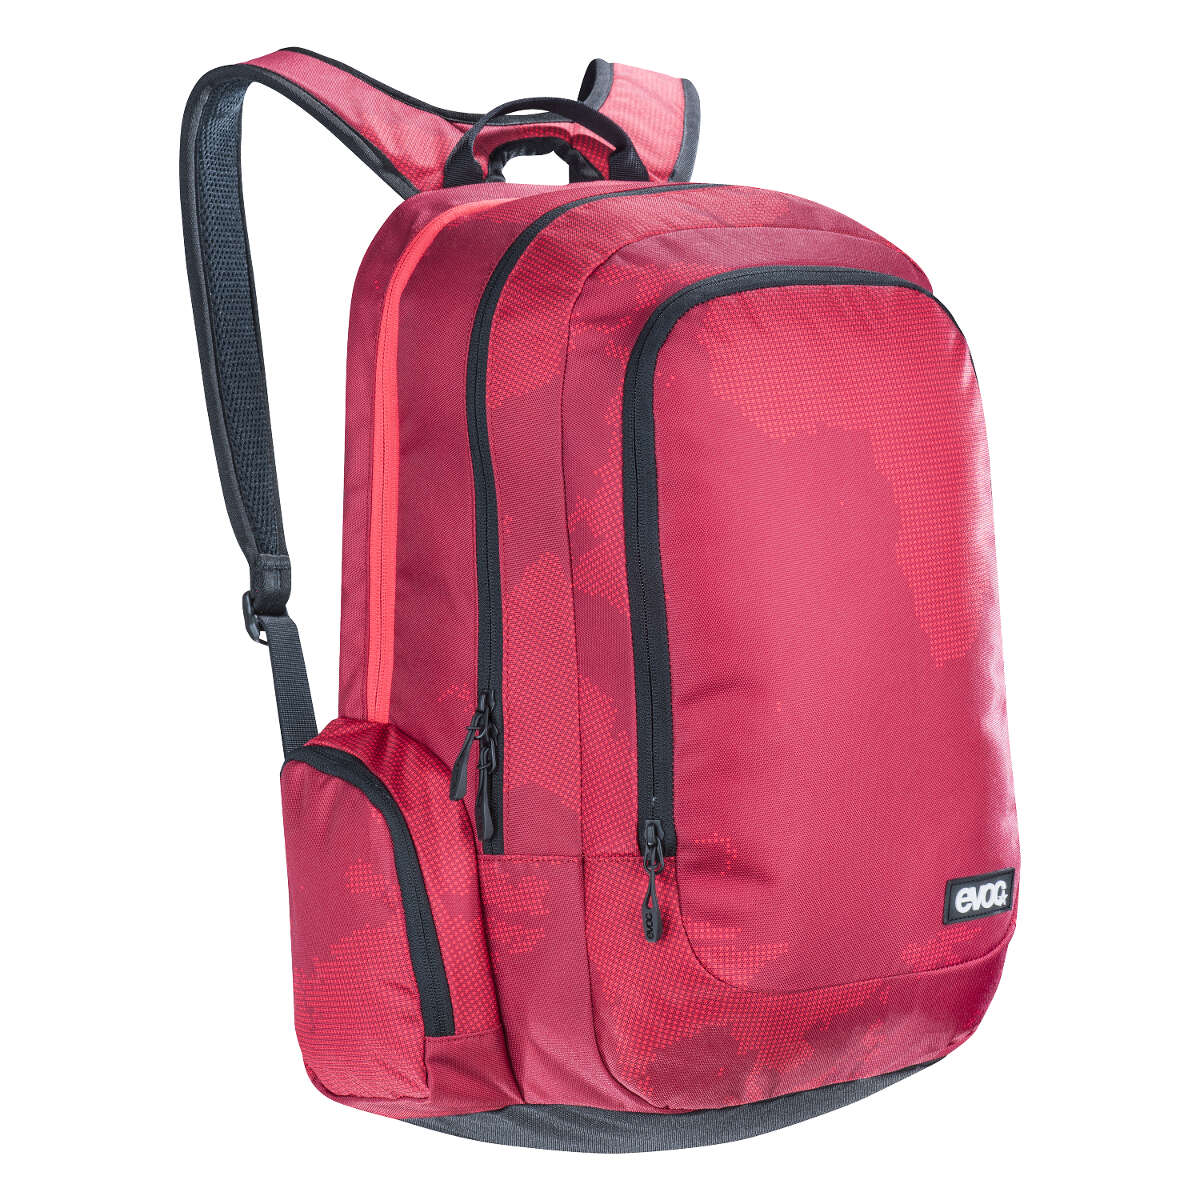 Evoc Backpack Park Red-Ruby, 25 Liter